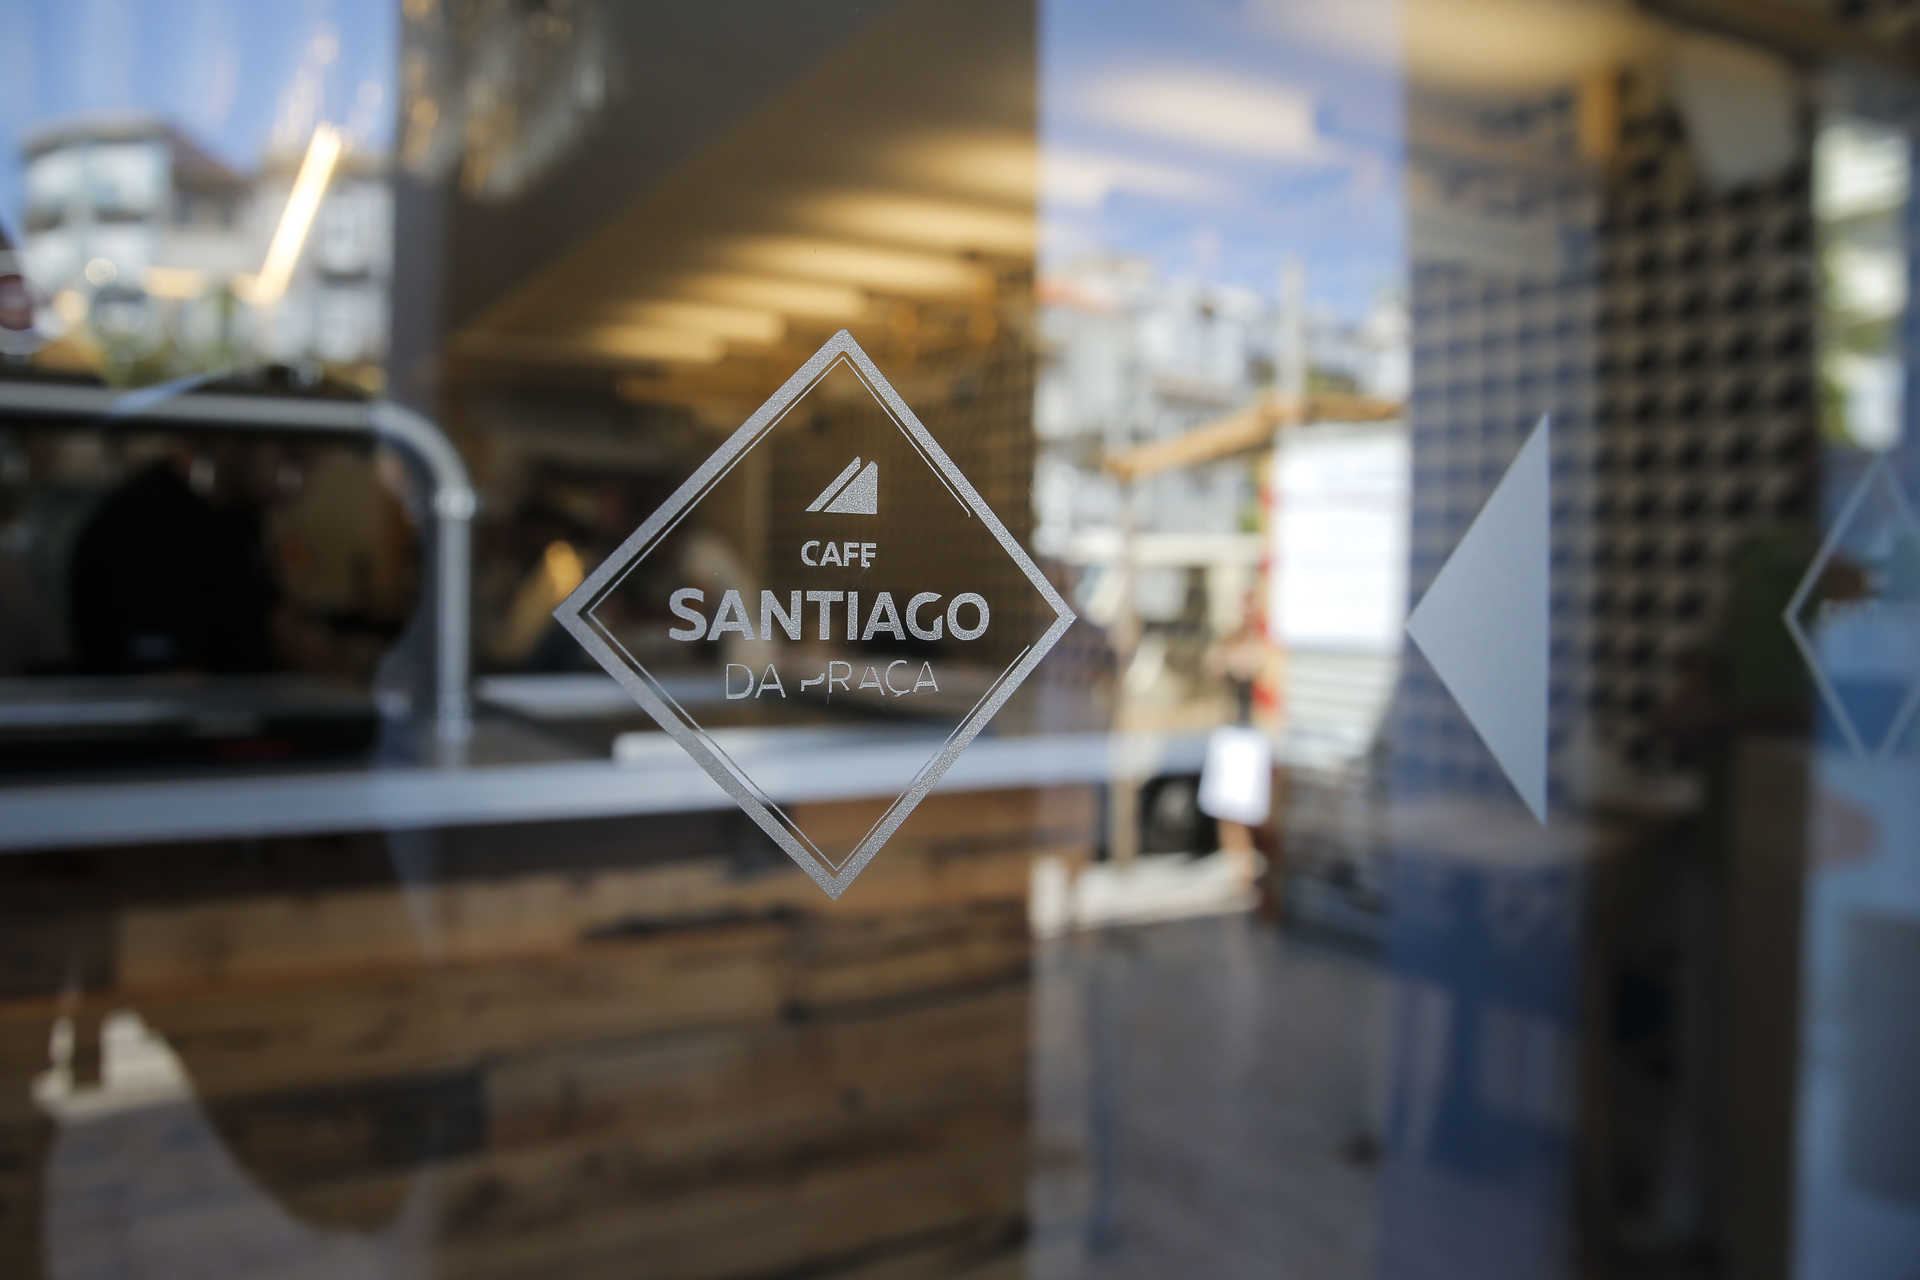 Santiago na Praça – Novo espaço do Café Santiago